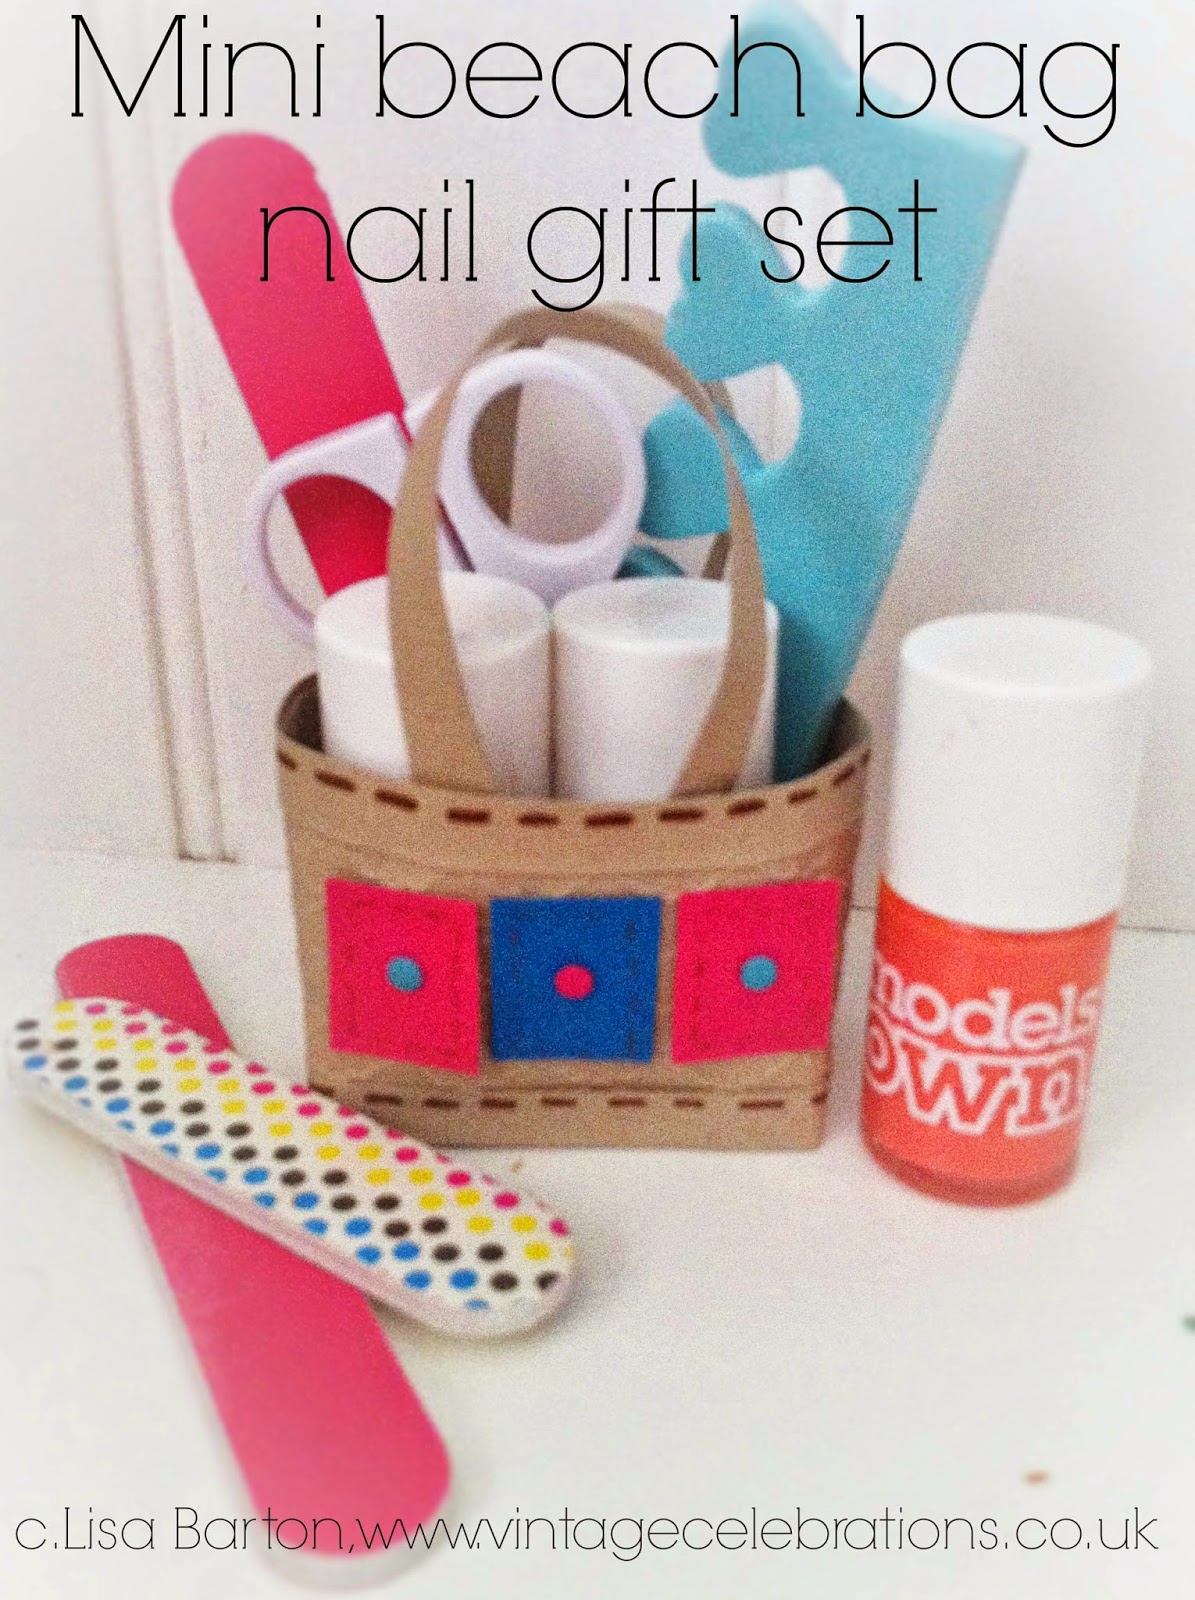 stampin+up+mini+beach+bag+nail+gift+set+by+lisa+barton,+vintage ...